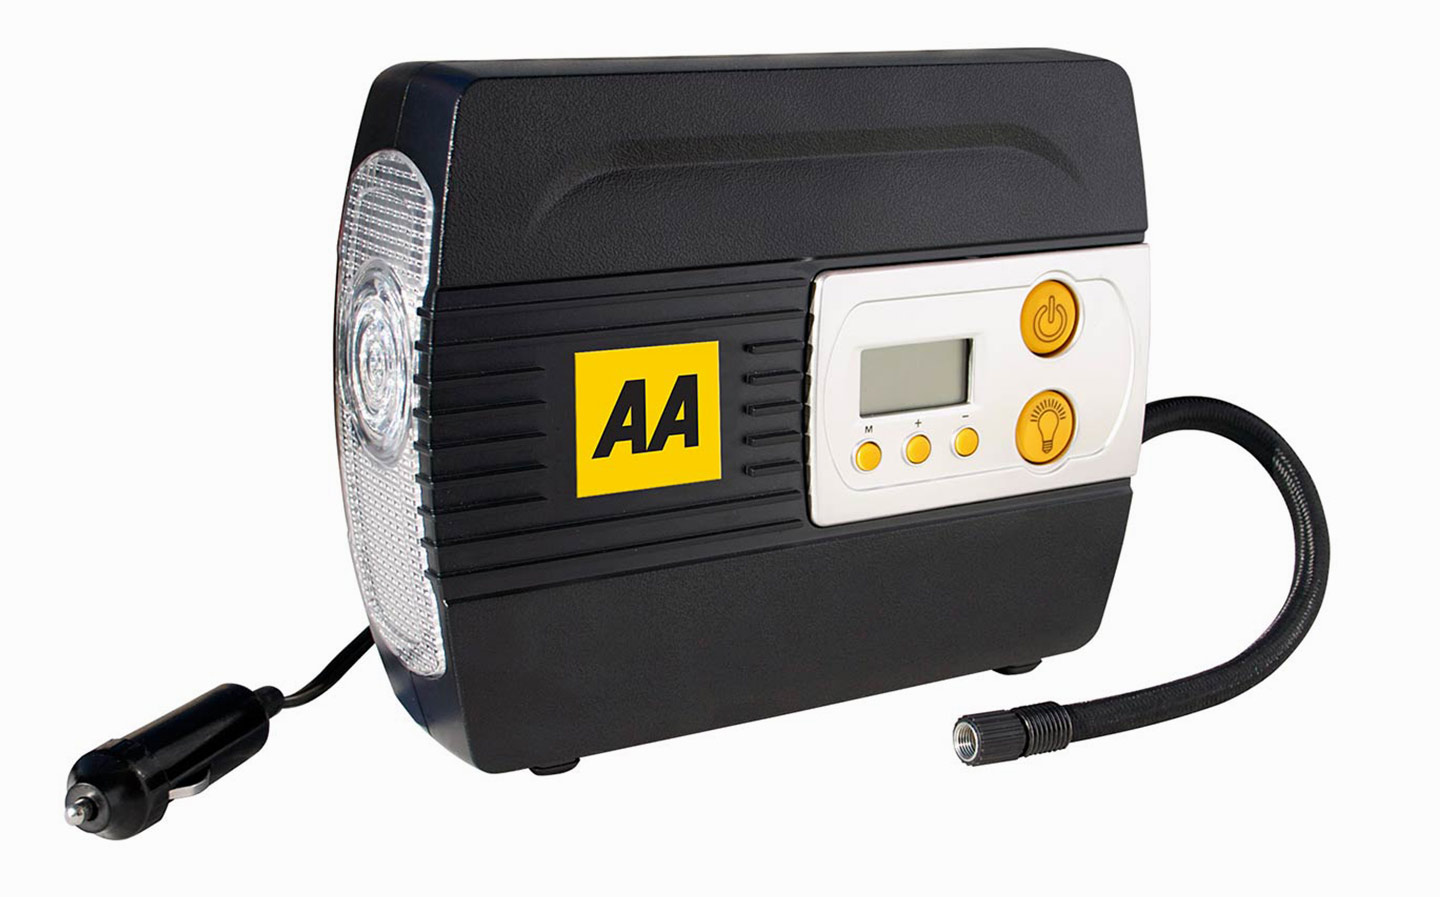 AA 12V Digital Air Compressor review